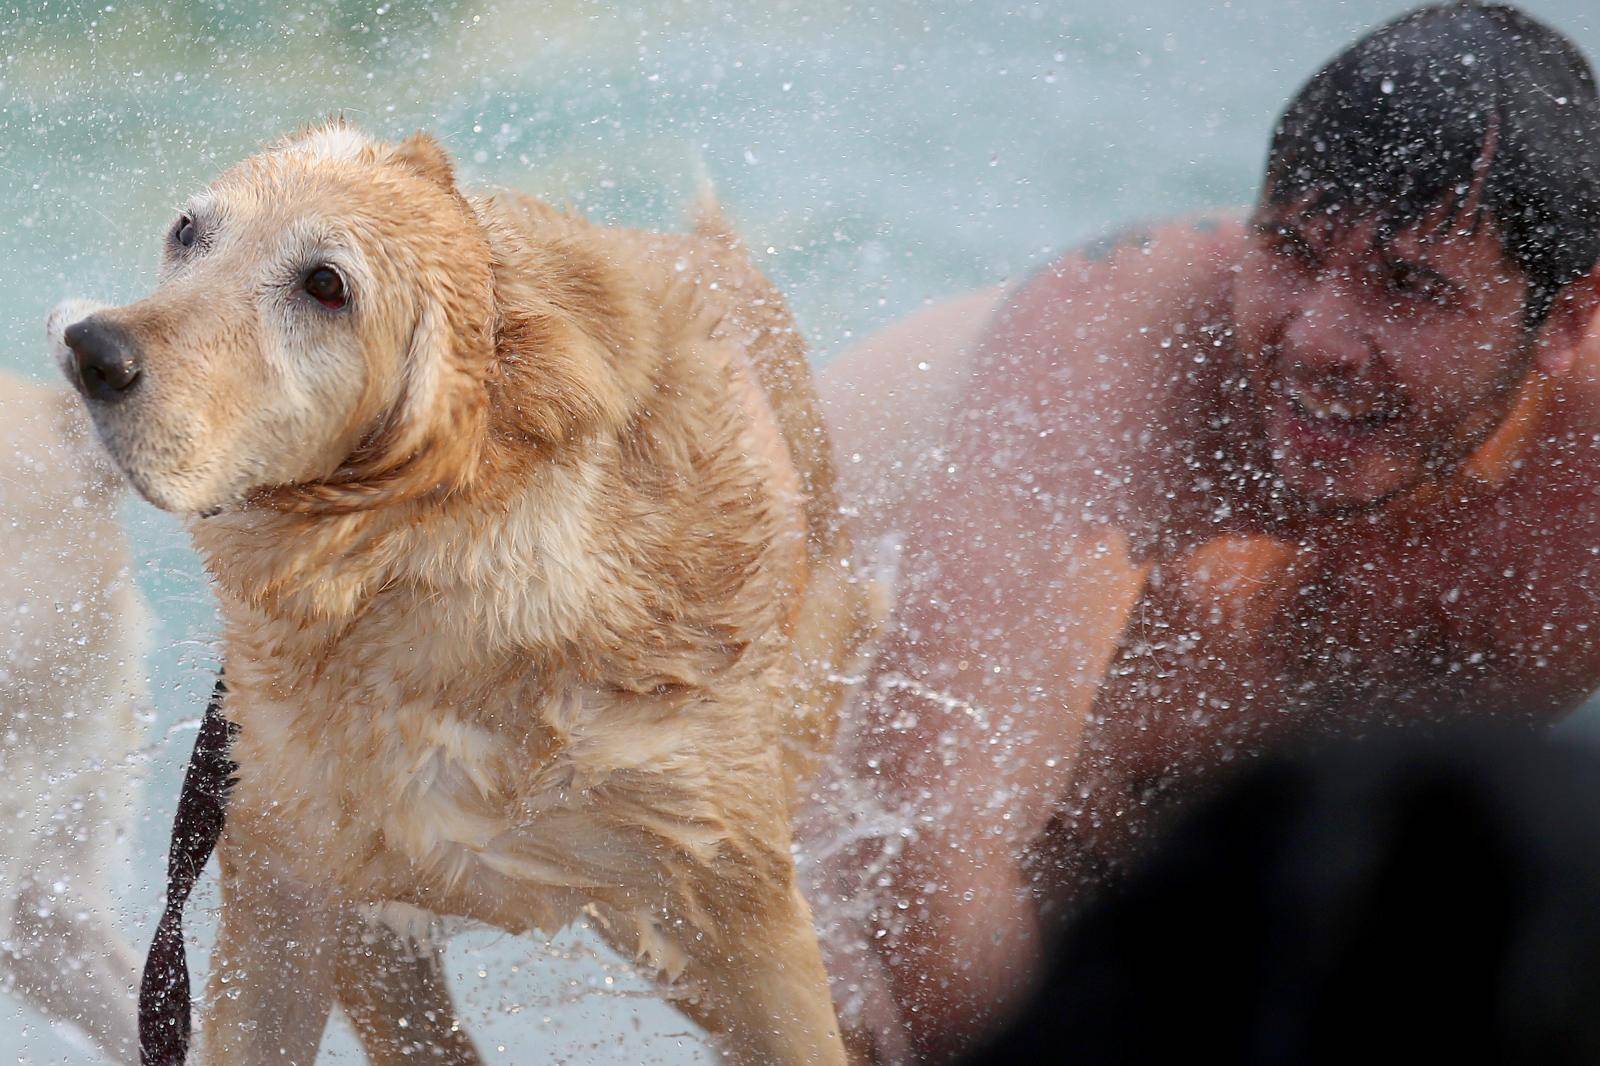 U crikvenici je odrÅ¾ano plivaÄko natjecanje pasa i njihovih vlasnika